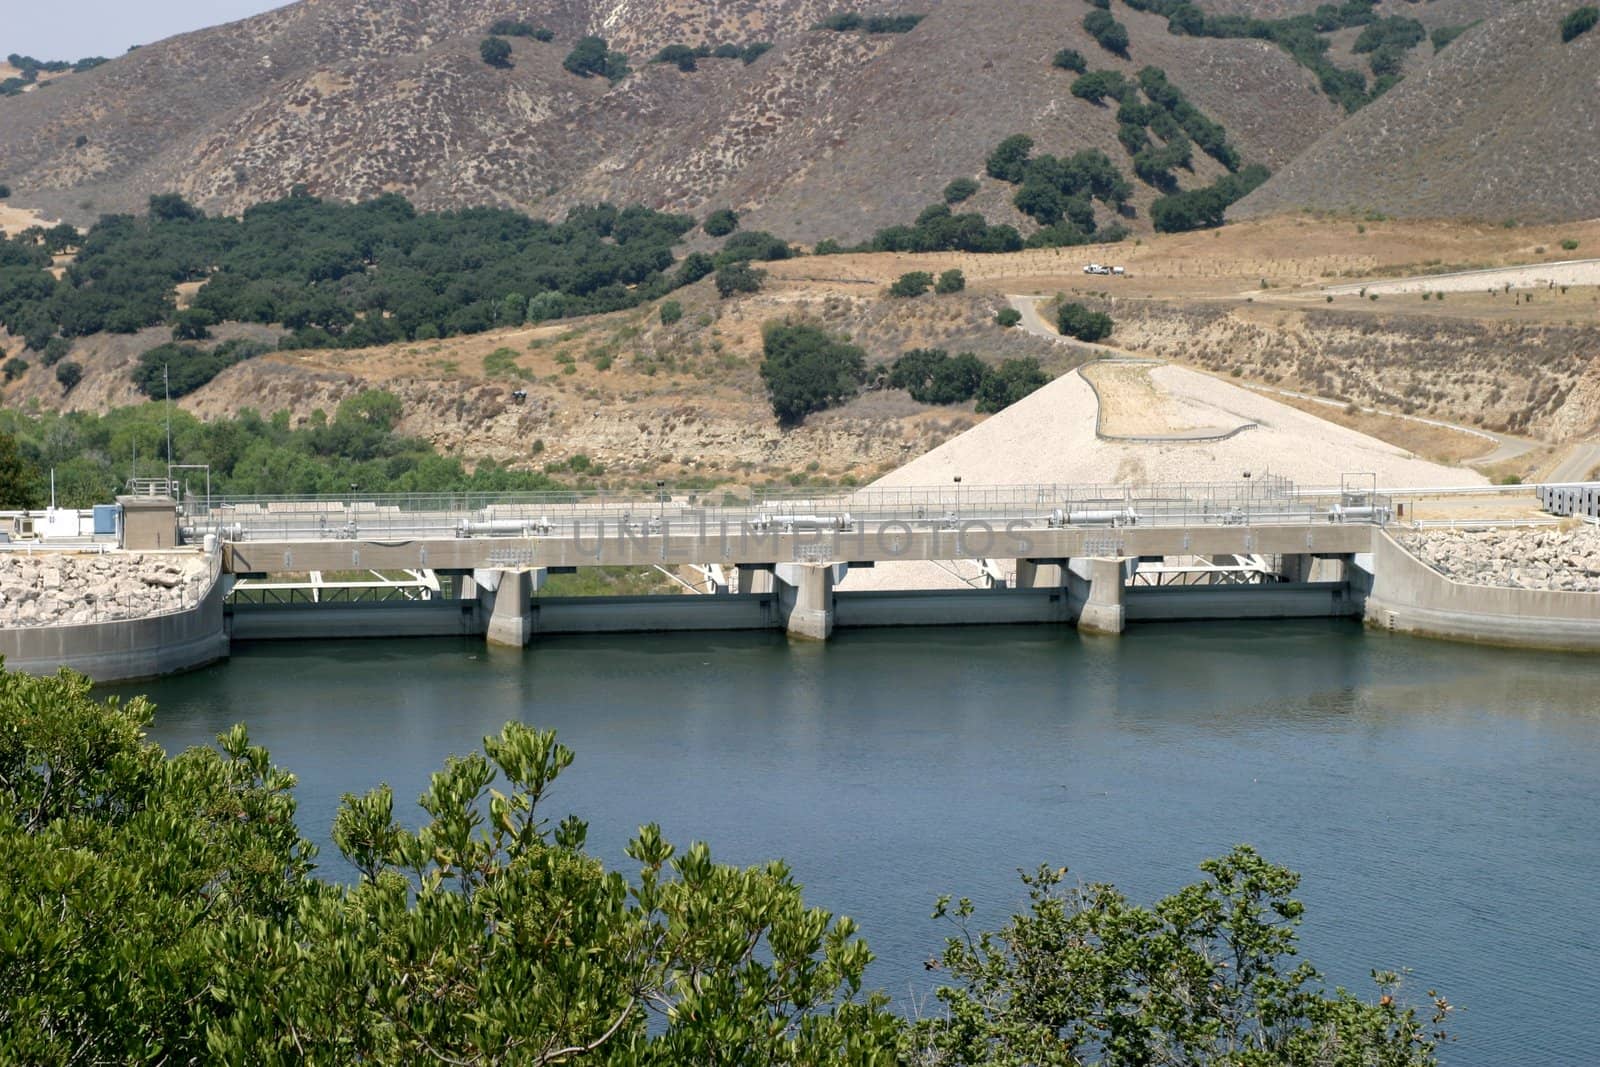 The Bradbury Dam at Lake Cachuma in Santa Barbara County.